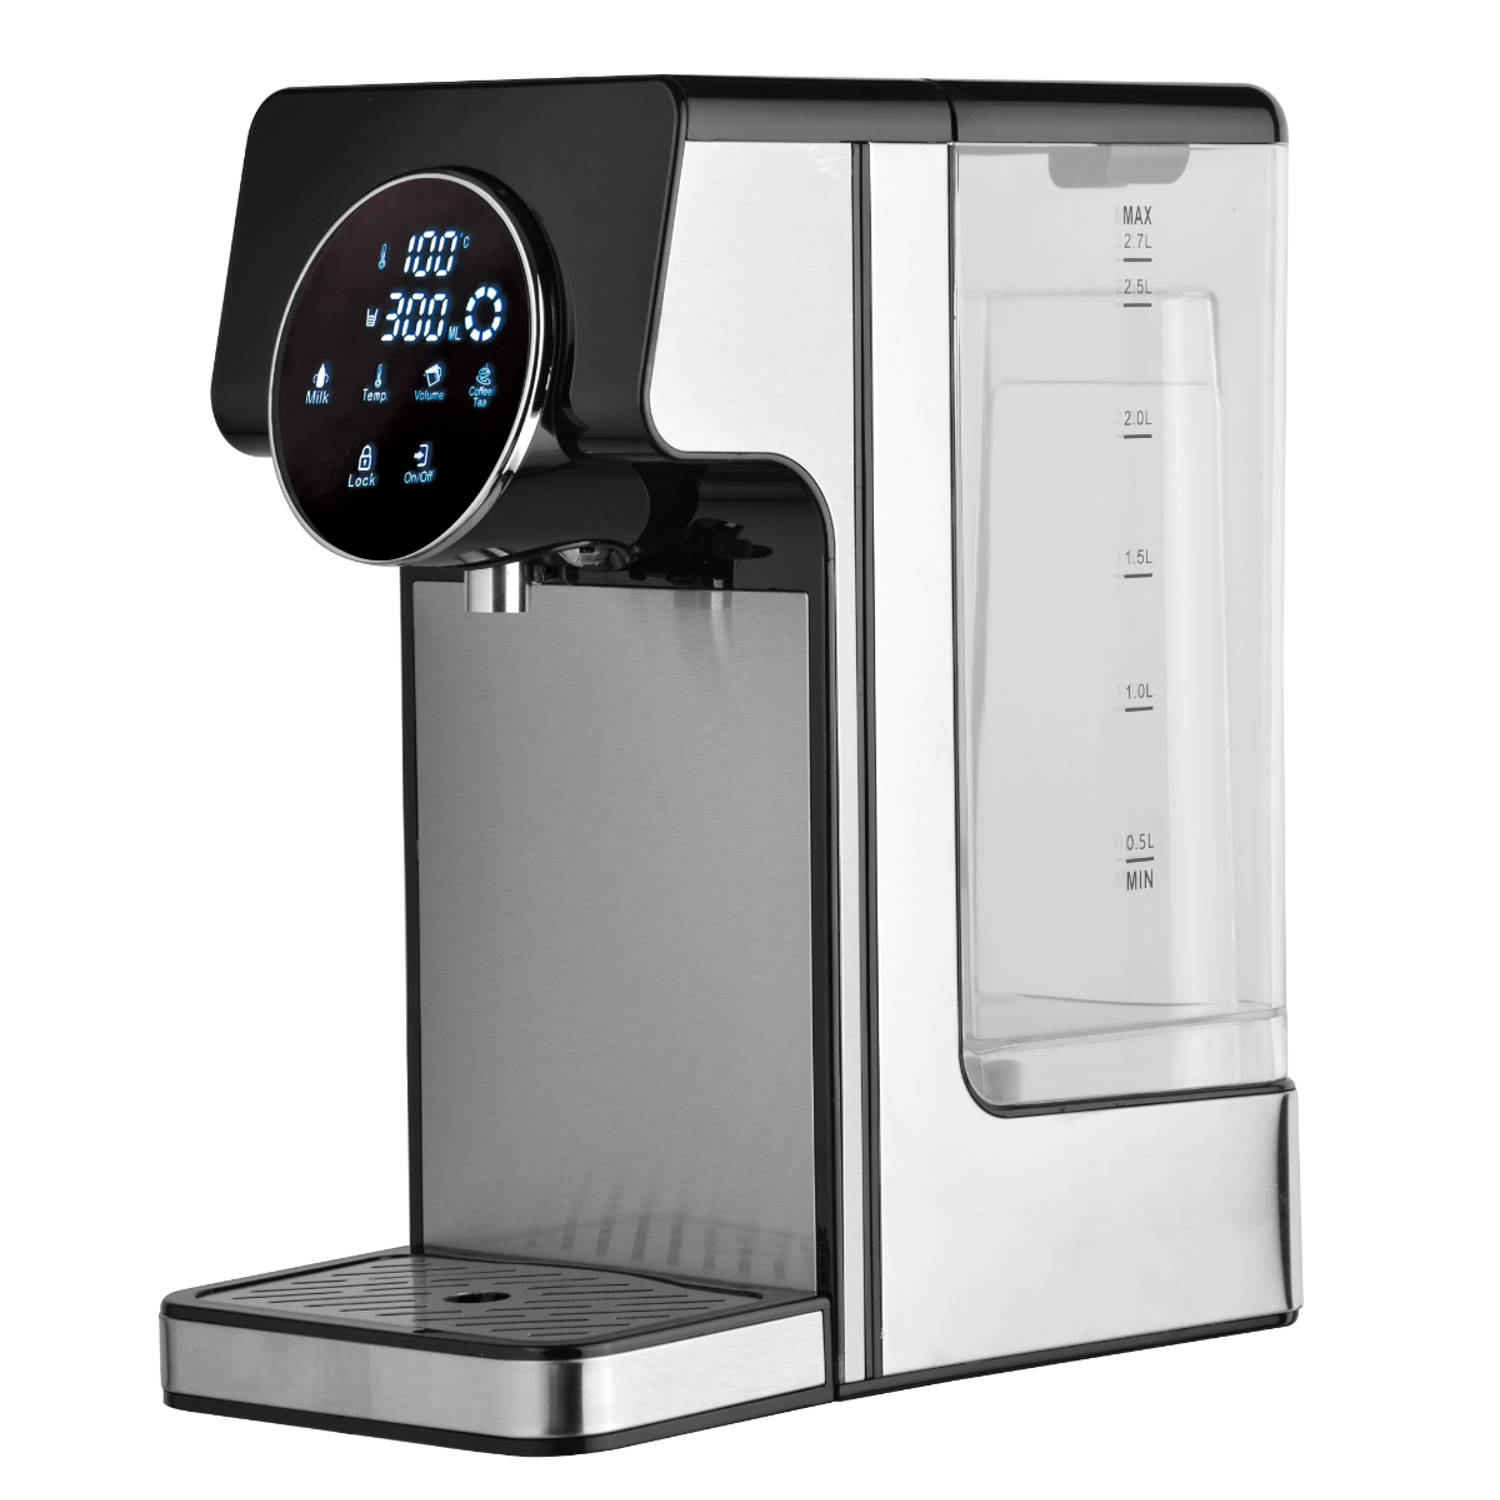 Perow Heetwaterdispenser - Waterkoker - Heetwatertap - Instant waterkoker - RVS - Zwart - 2.7 Liter